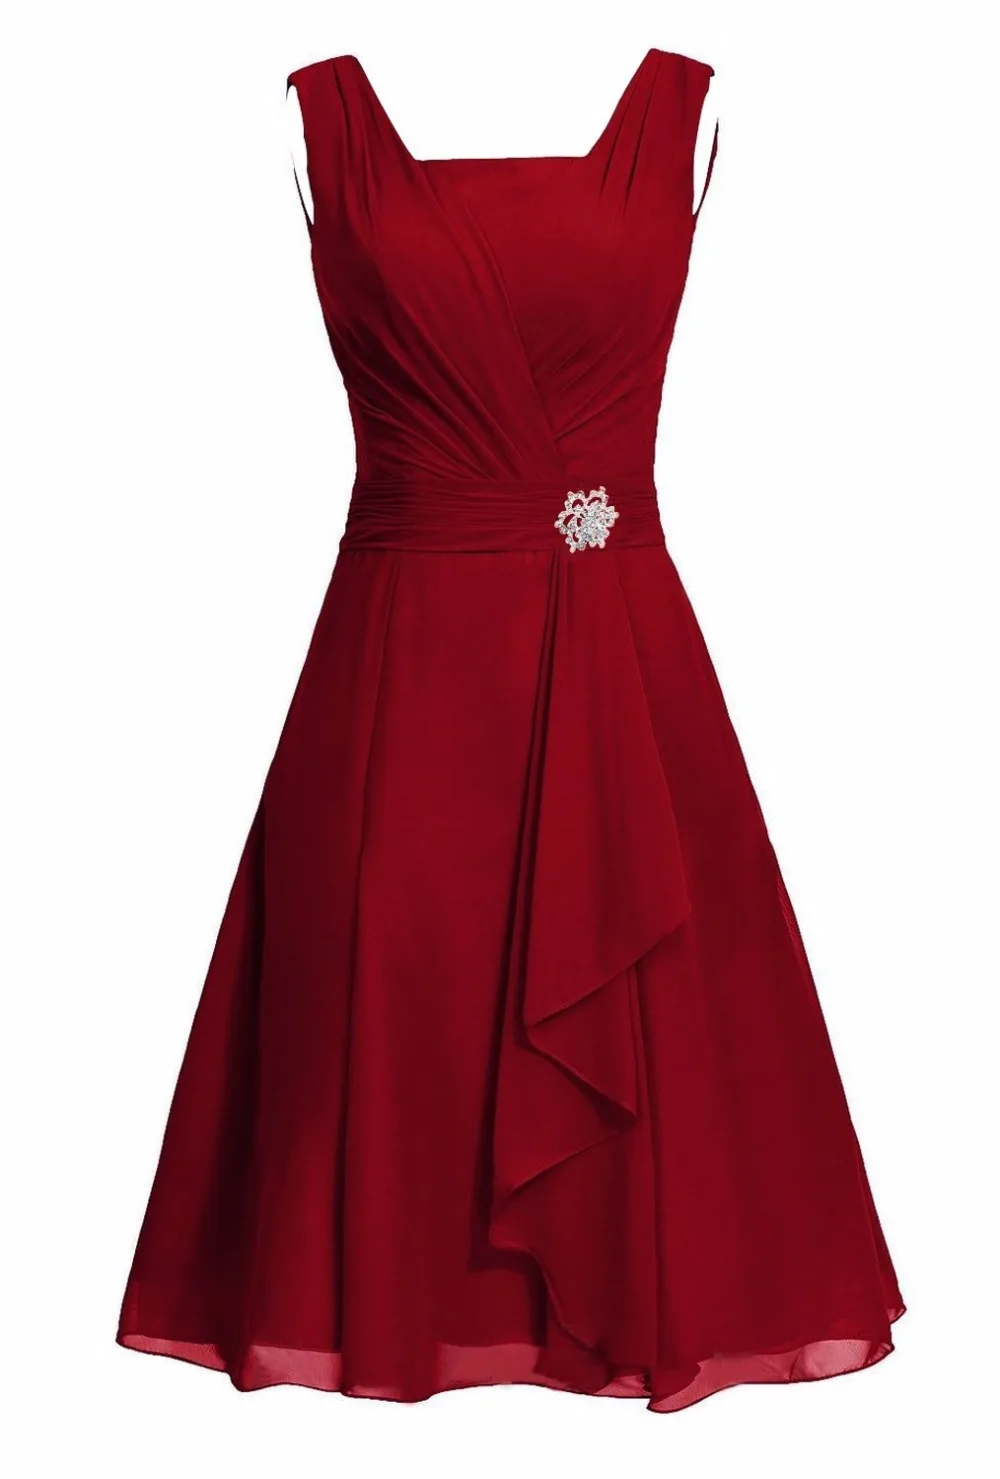 Waulizane элегантные шифоновые платья трапециевидной формы для выпускного вечера на молнии без рукавов вечерние платья 16 цветов на таможне обычный рукав